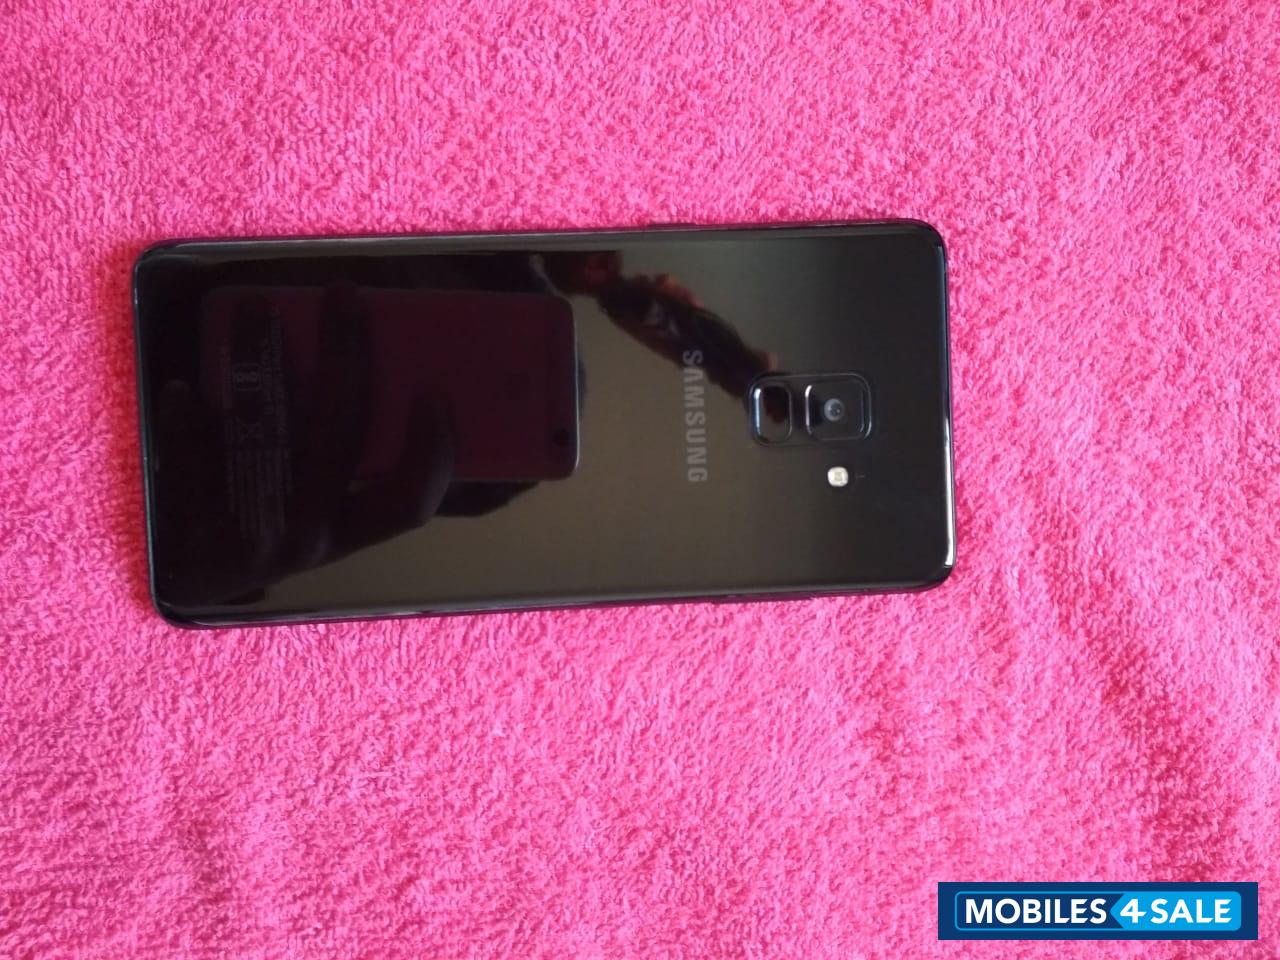 Black Samsung Galaxy A8